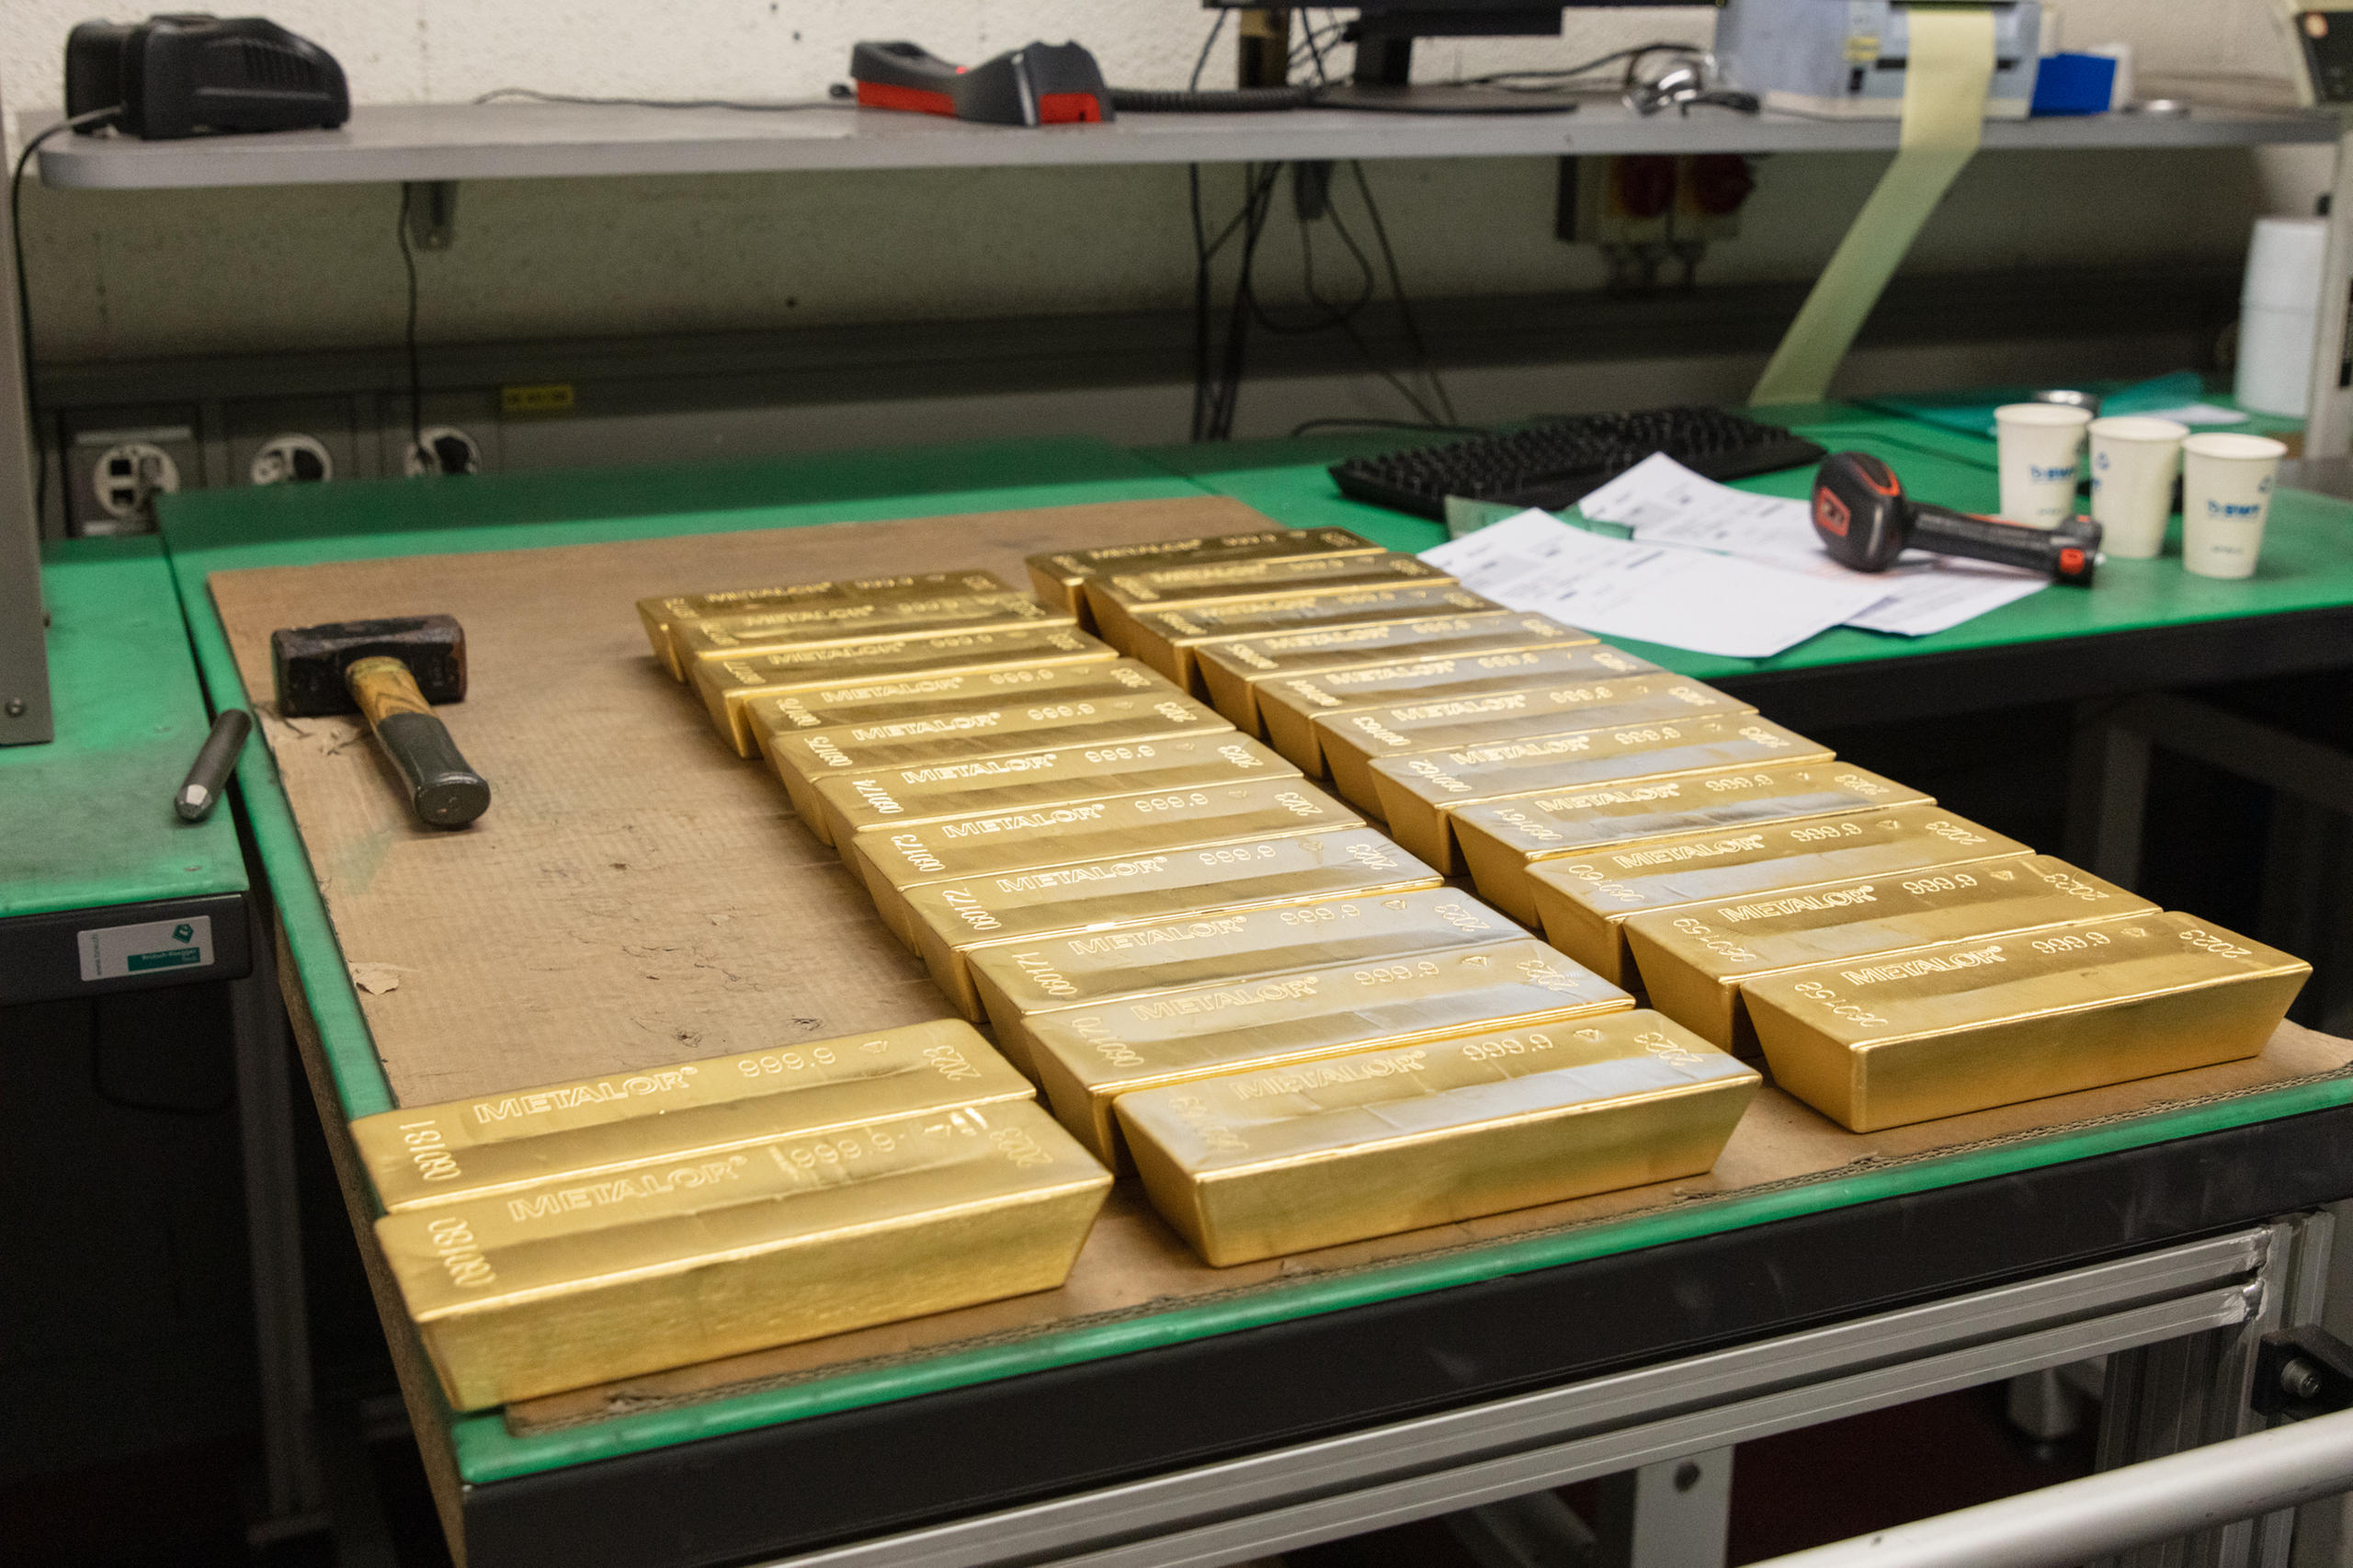 金属冶炼厂主要加工黄金、白银、铂和钯等贵金属。瑞士资讯swissinfo.ch走访了位于瑞士纳沙泰尔州的美泰乐公司，这家公司是全球最大的贵金属冶炼商之一。